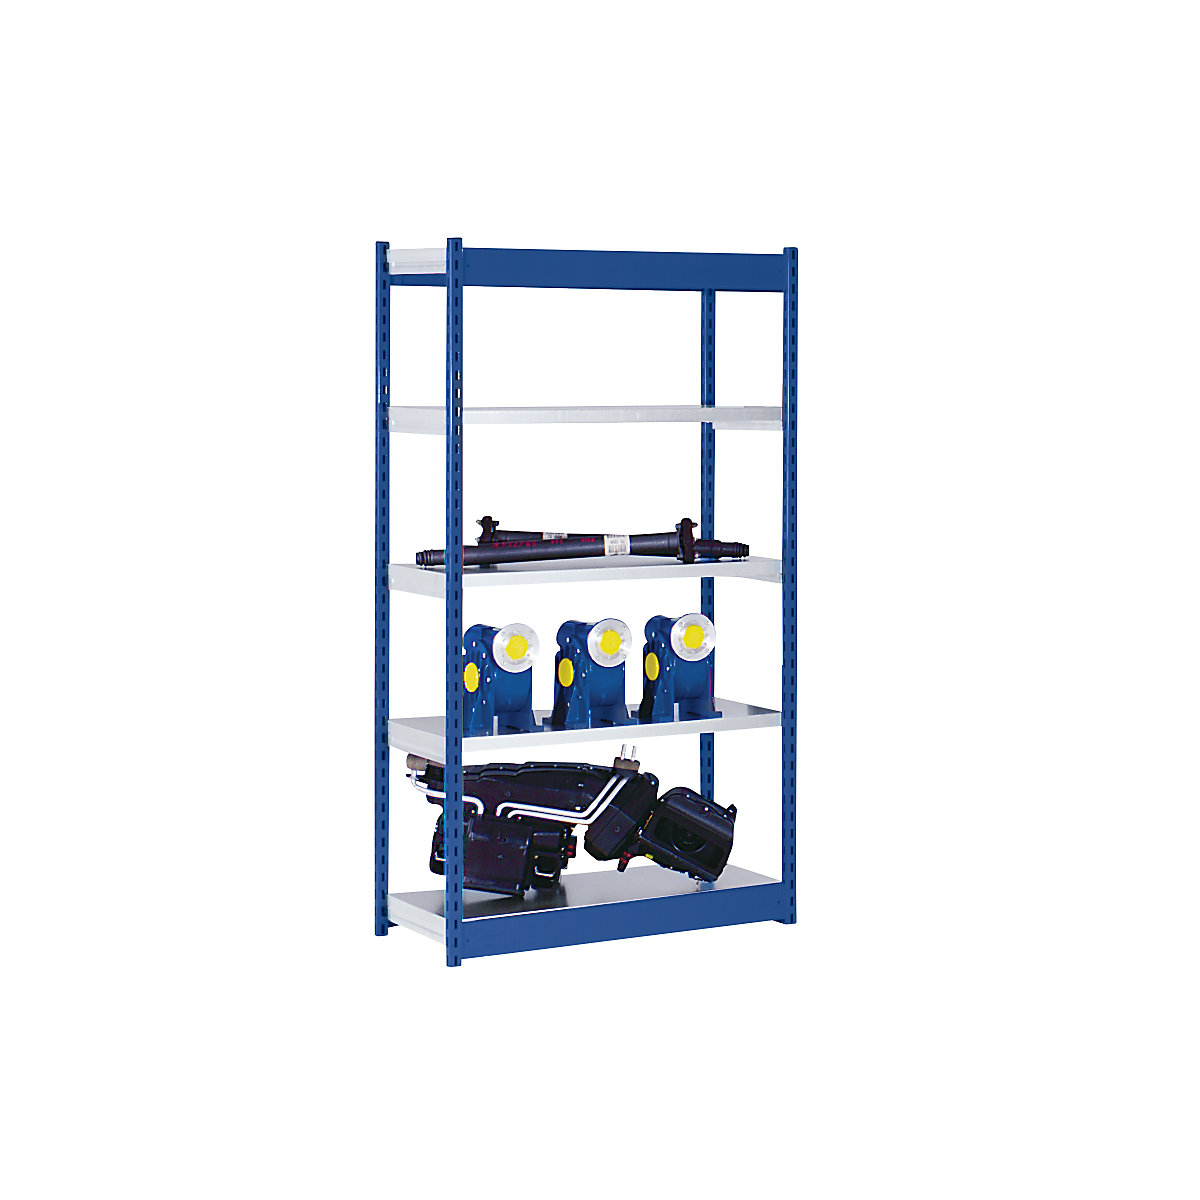 Stabilní zásuvný regál, jednostranný – hofe, výška regálu 2000 mm, modrý / pozinkovaný, šířka police 1025 mm, základní regál, šířka x hloubka 1025 x 500 mm-5